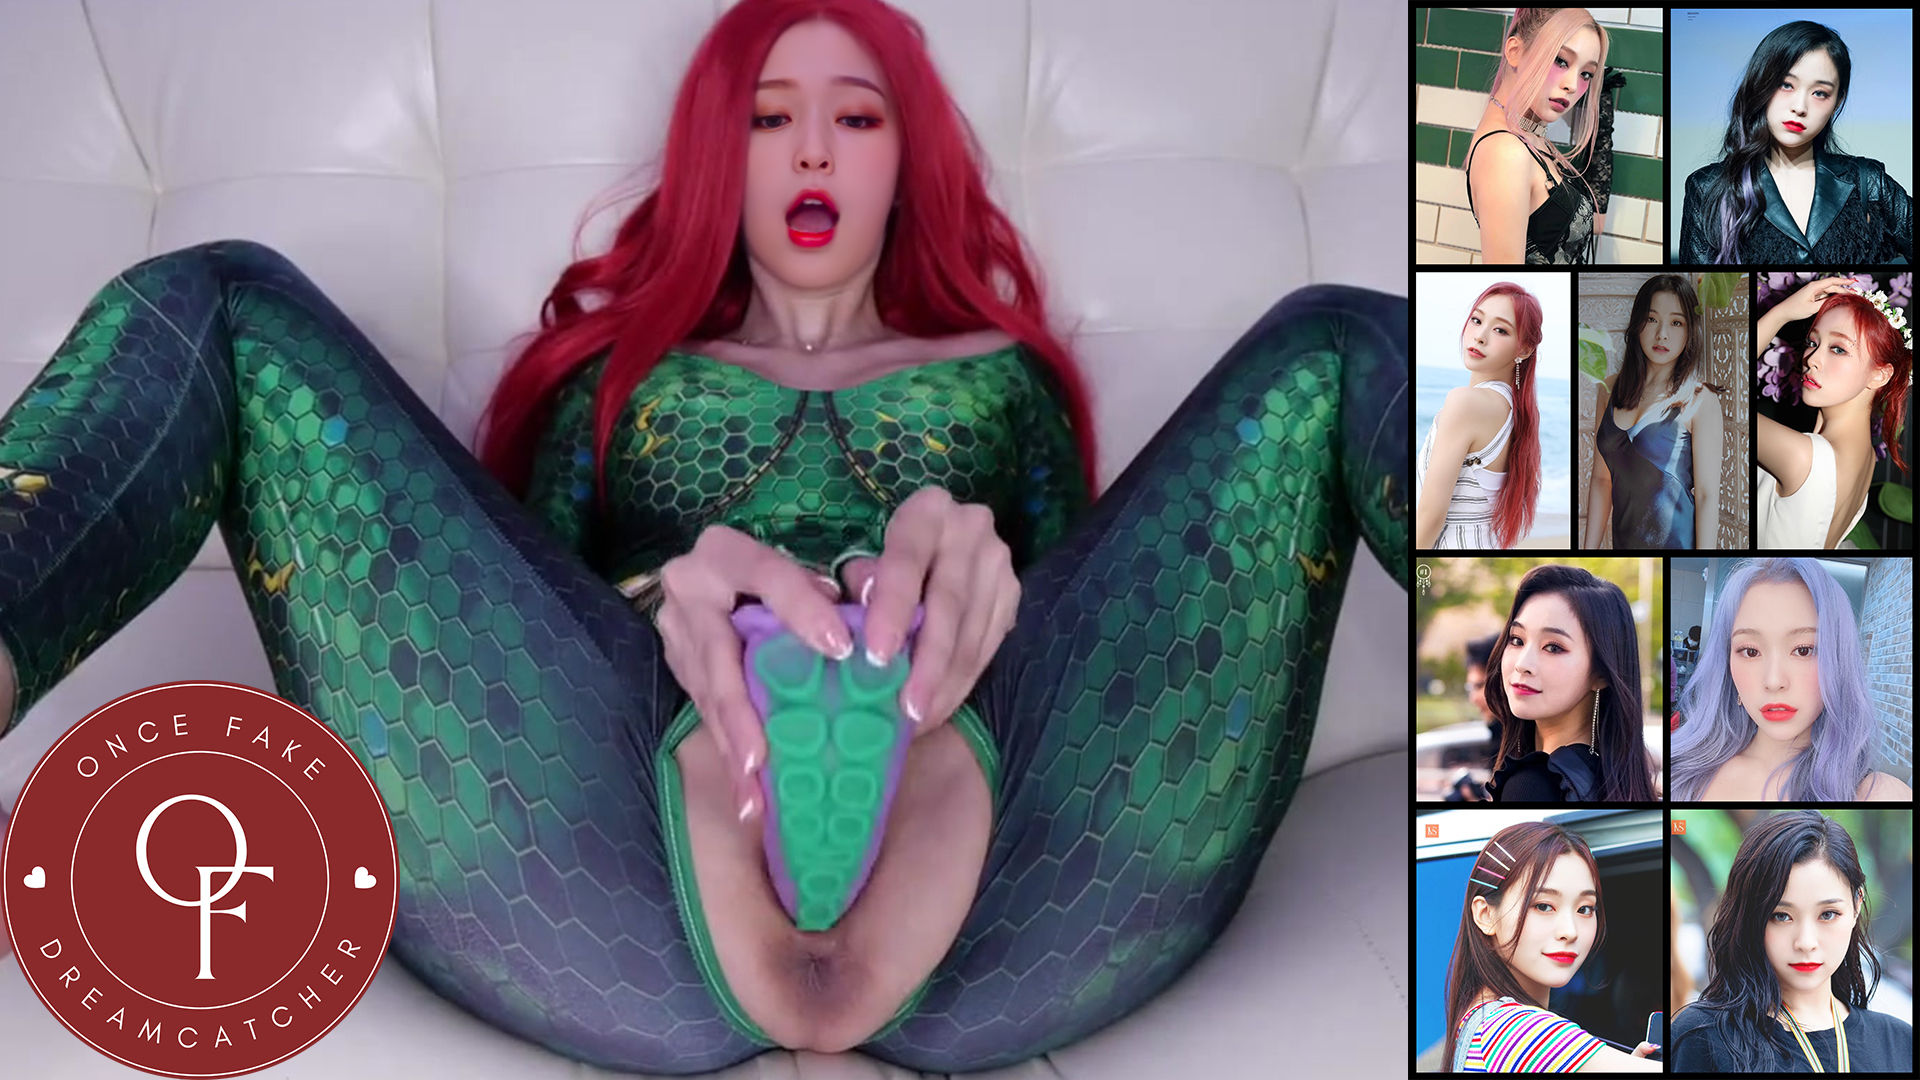 Dreamcatcher Gahyeon Fucked in her Mera Costume DeepFake Porn - MrDeepFakes